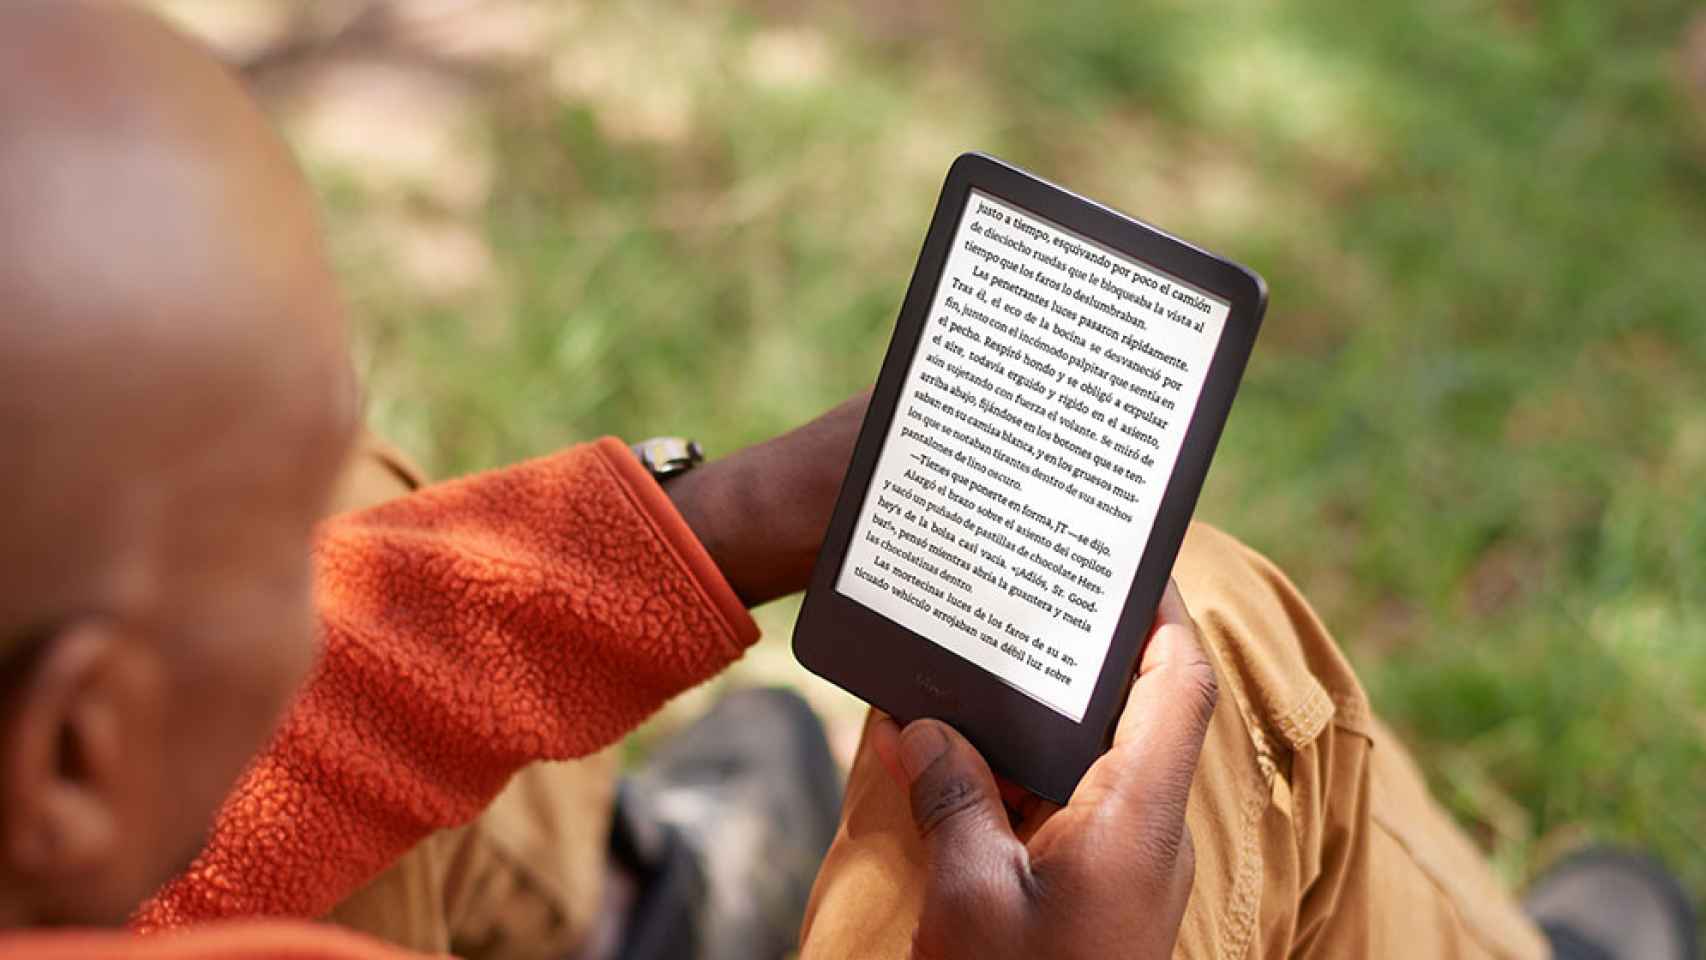 raqueta Tender dominio Amazon renueva su Kindle más barato con mayor resolución, batería y  subiendo su precio